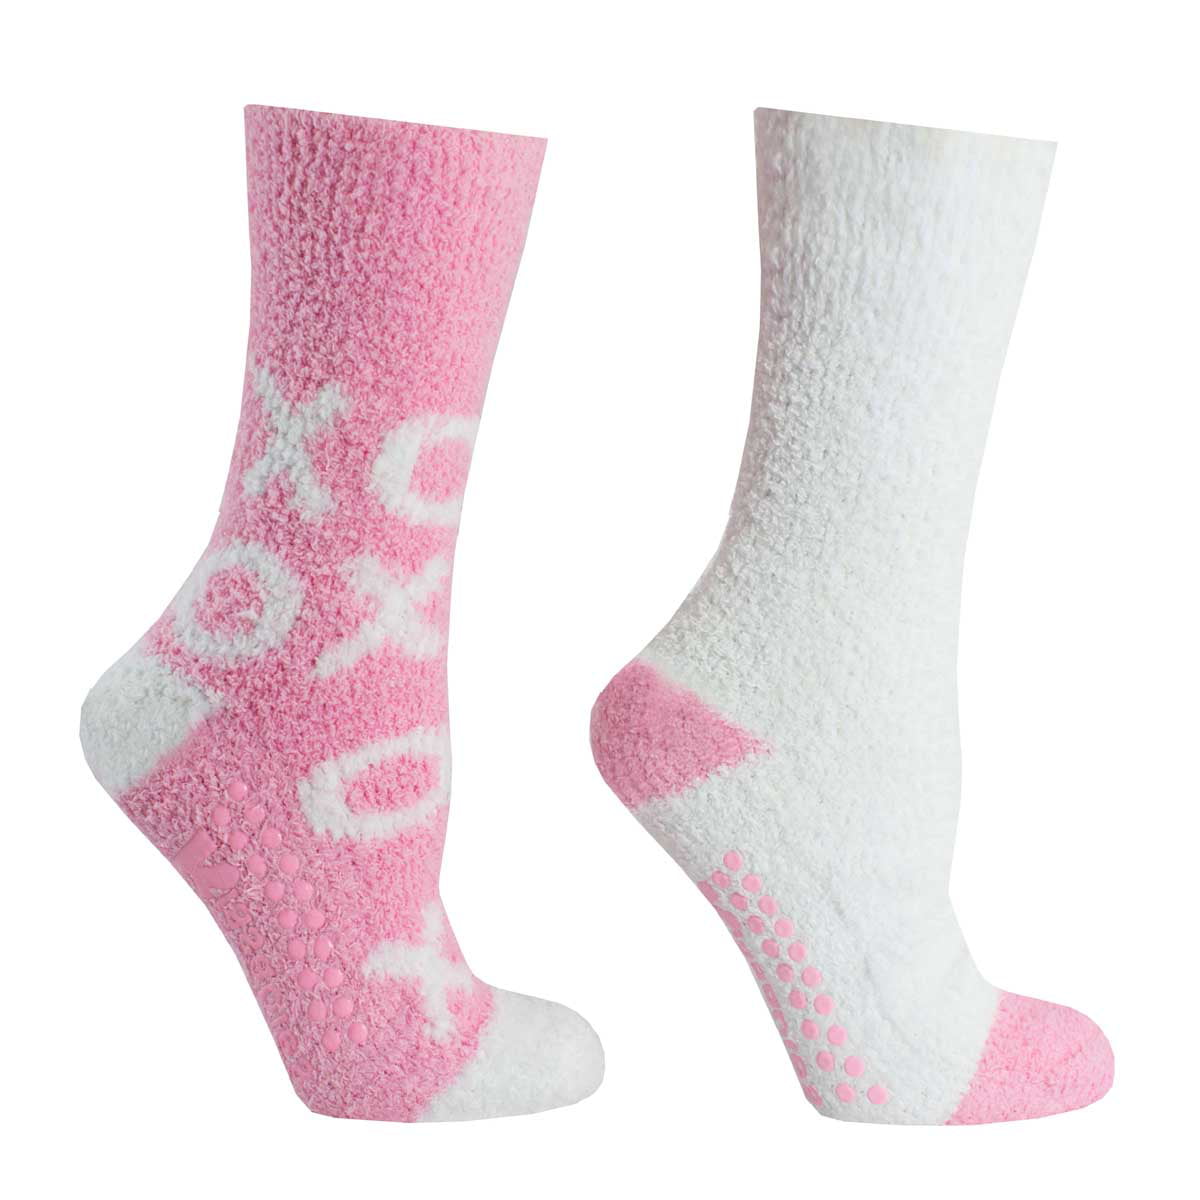 MinxNY 2 Pair Pack Women's Chenille Slipper Socks Lavender Infused Non ...